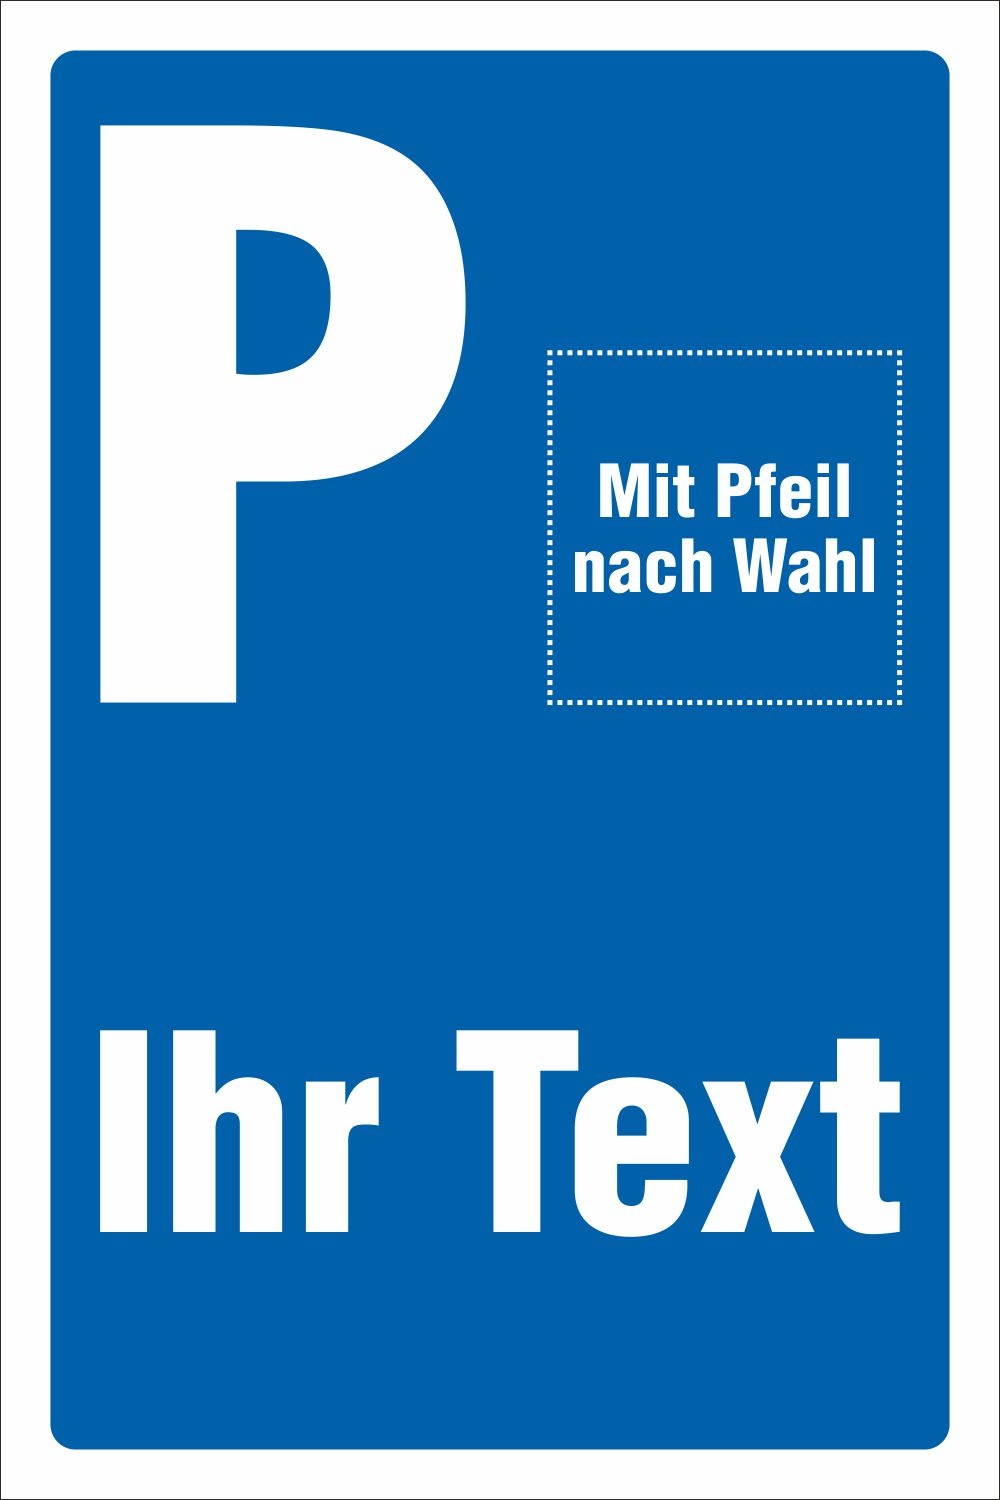 Parkplatz Aufkleber mit Wunschtext Pfeil rechts und links 